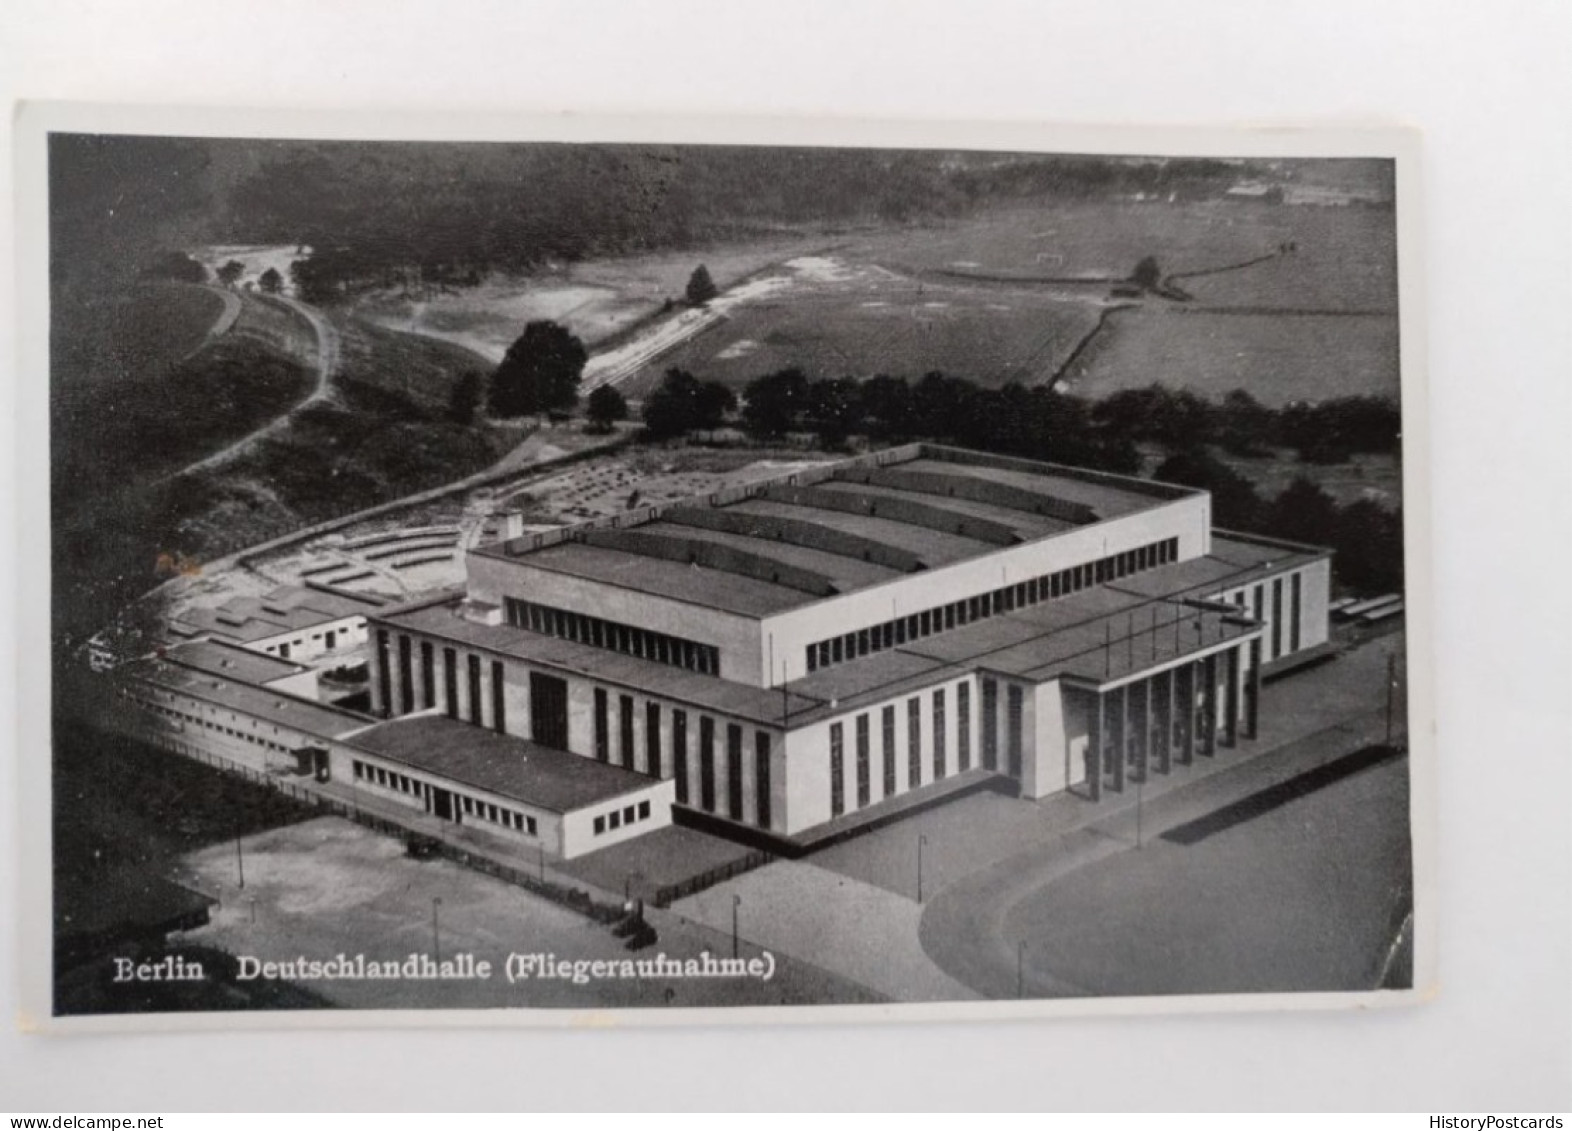 Berlin, Deutschlandhalle, Fliegeraufnahme, 1936 - Charlottenburg